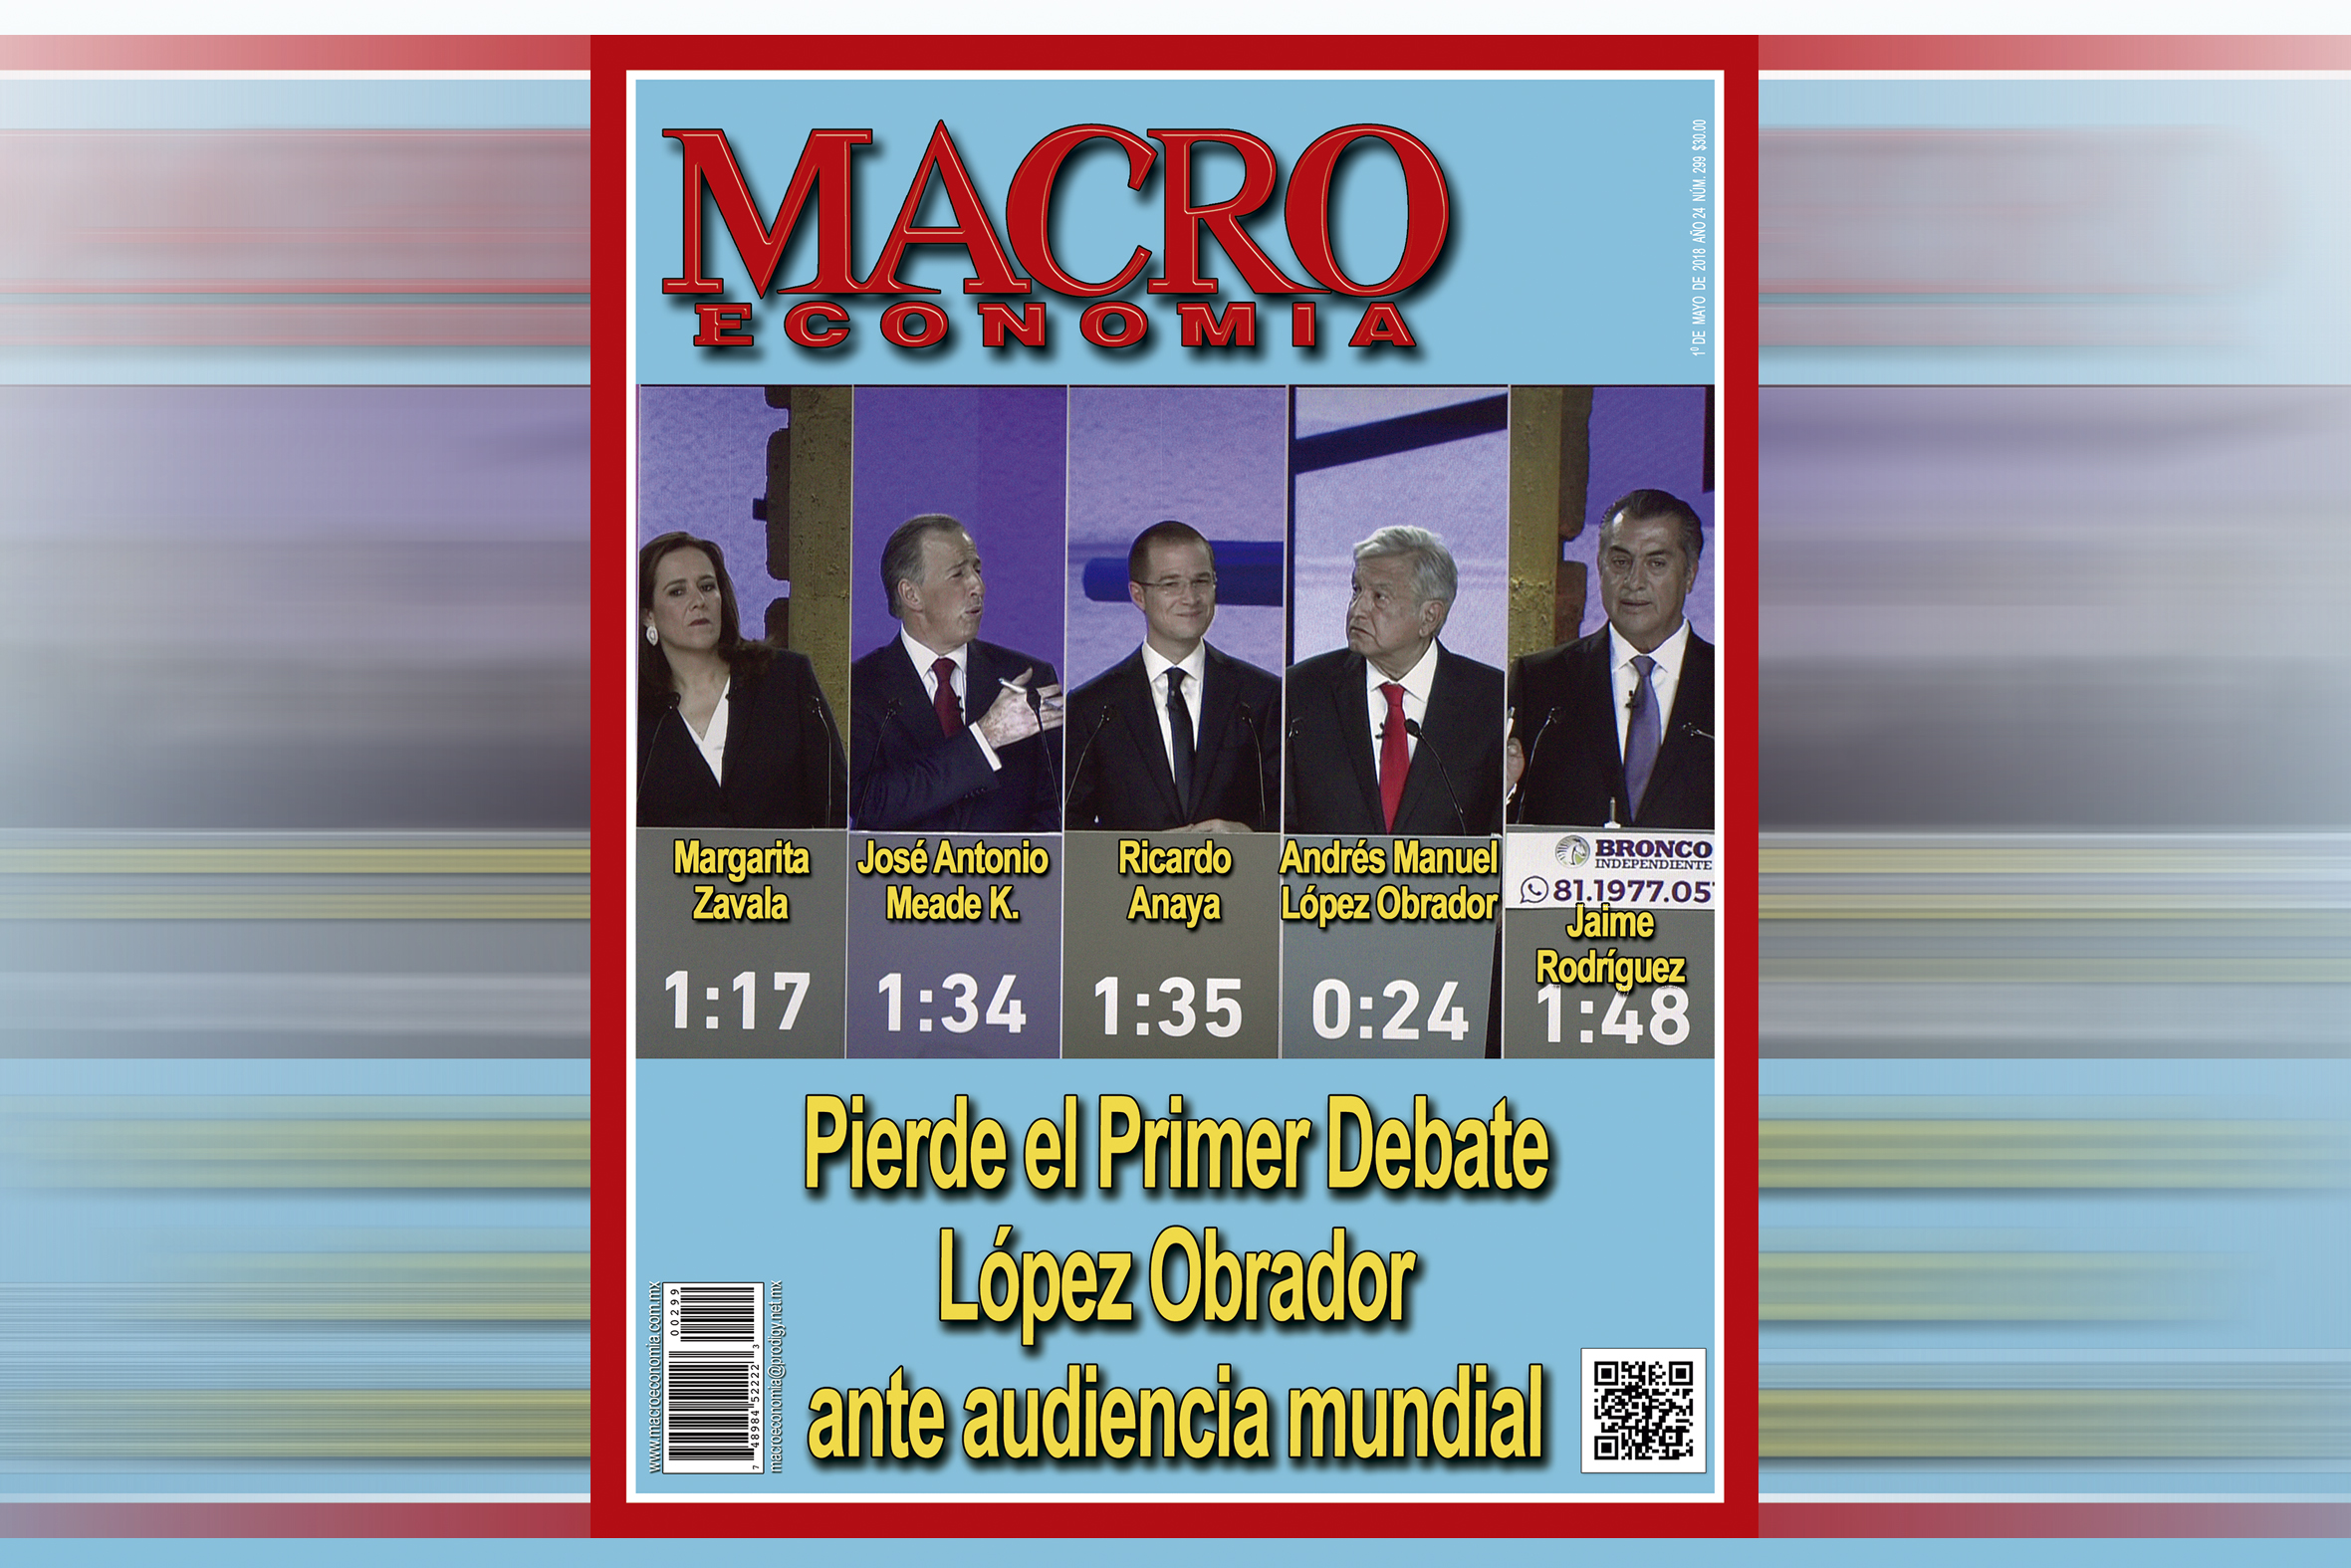 Photo of Pierde el Primer Debate López Obrador ante audiencia mundial